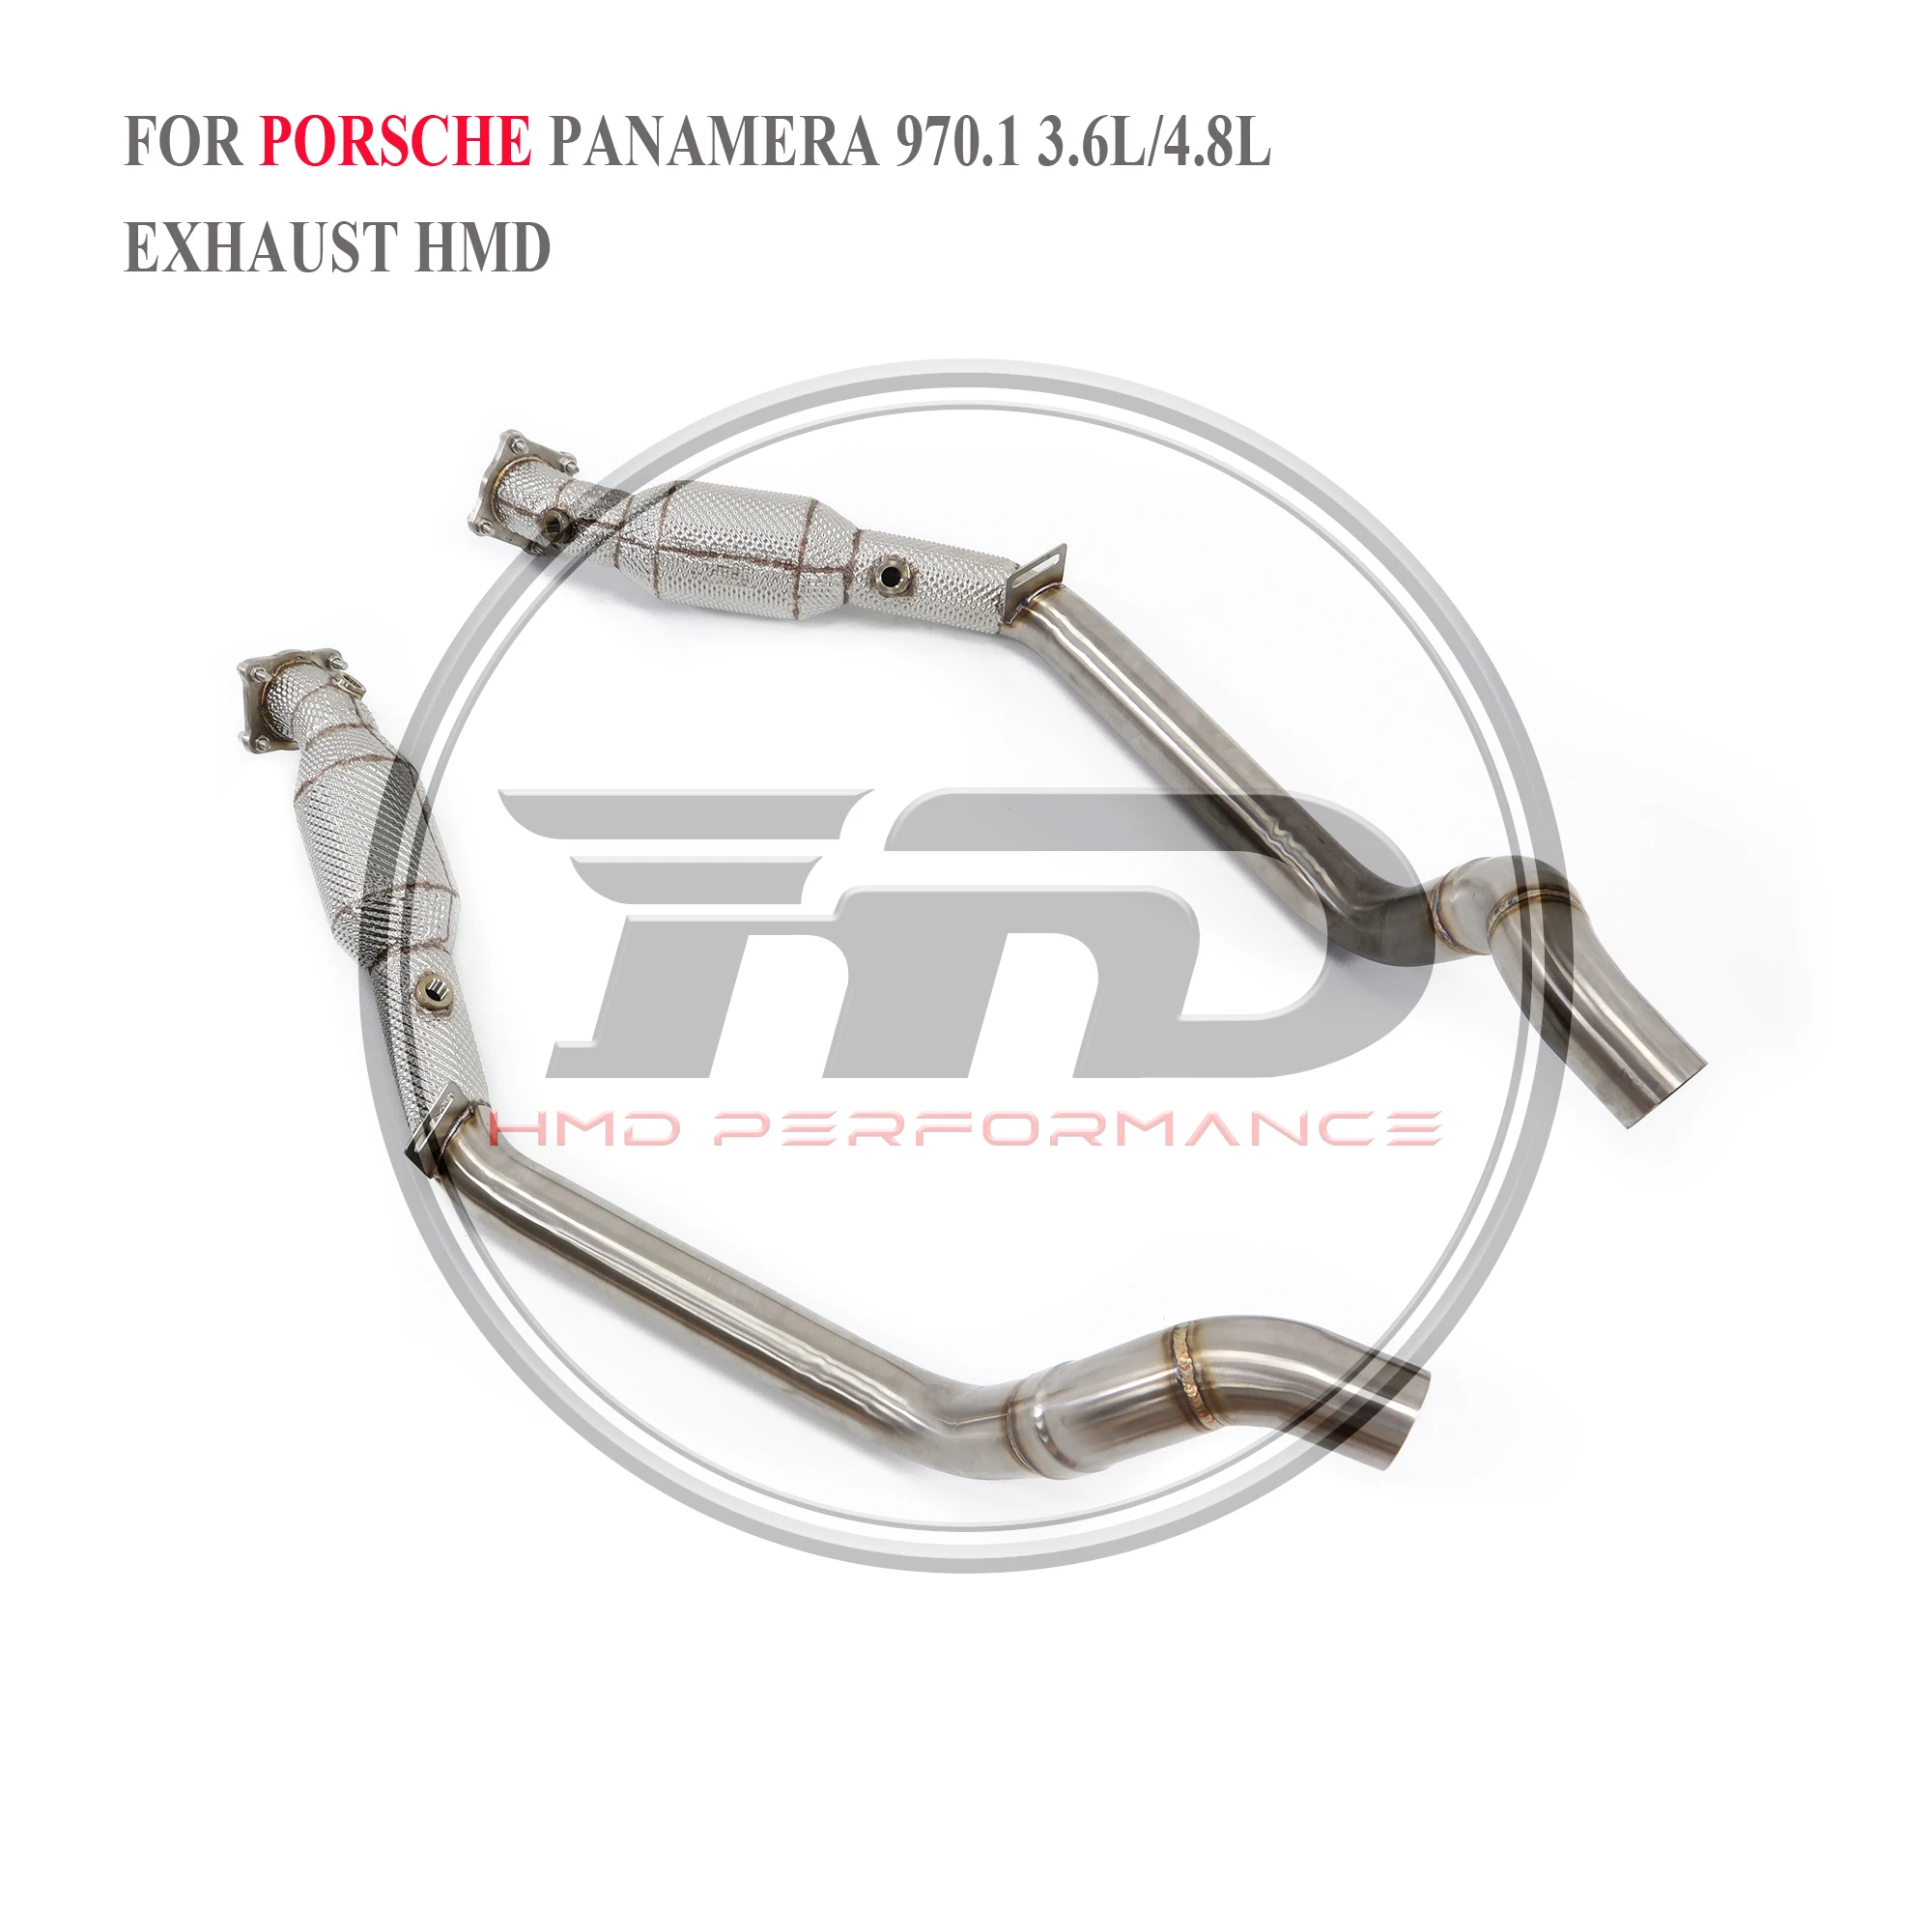 

HMD выхлопная система, высокая производительность потока, труба для Porsche Panamera S 3.6L 4.8L 970,1 2010-2014 с теплозащитной гоночной трубой